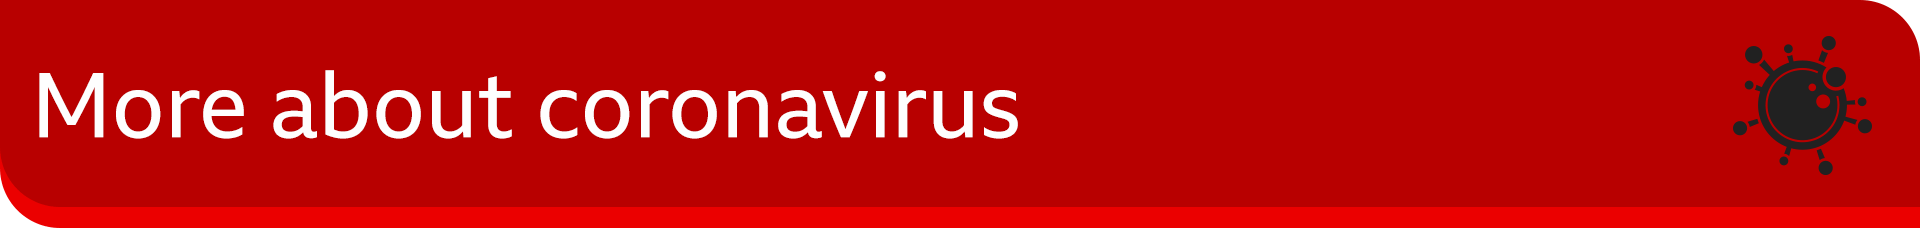 Bannerafbeelding met 'meer over coronavirus'